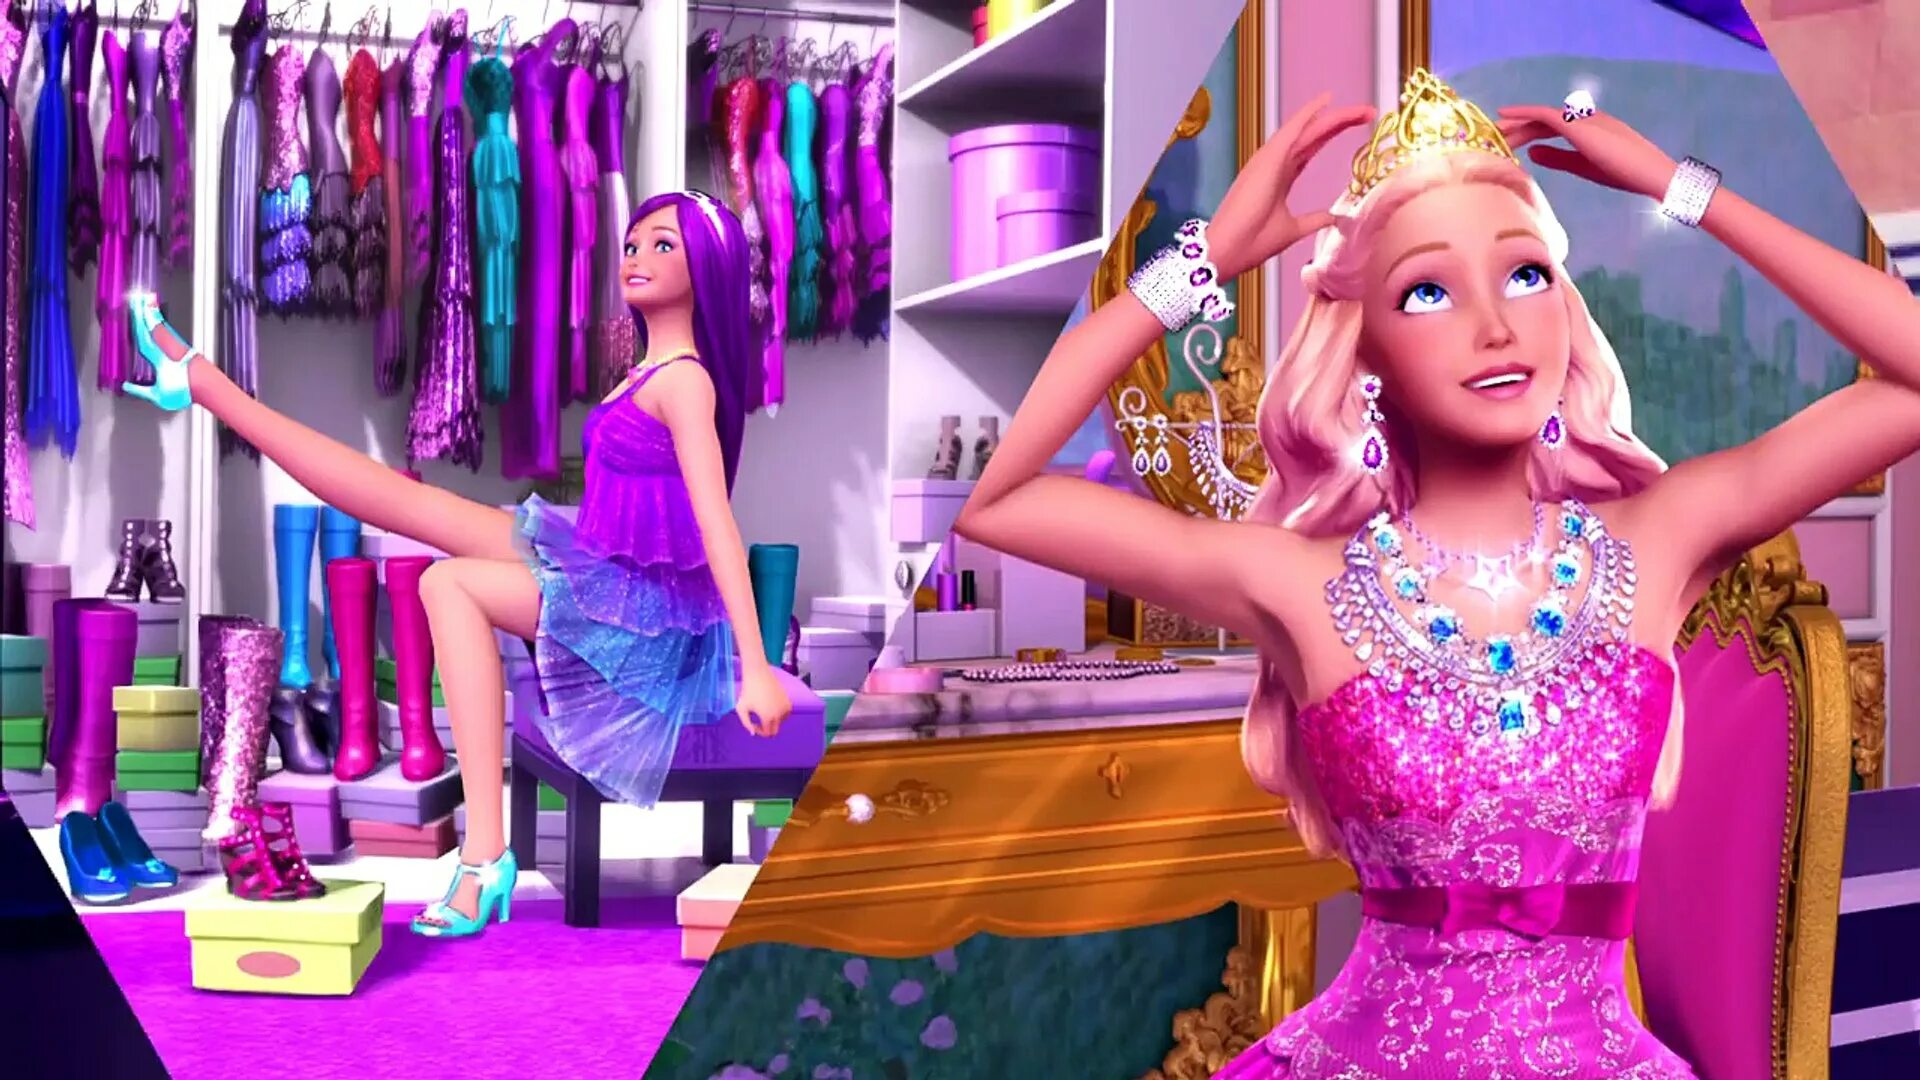 Принцесса и поп звезда. Барби принцесса и поп-звезда Тори. Барби принцесса и поп-звезда мультфильм. Барби попстар принцесса. Барби и поп звезда мультик.